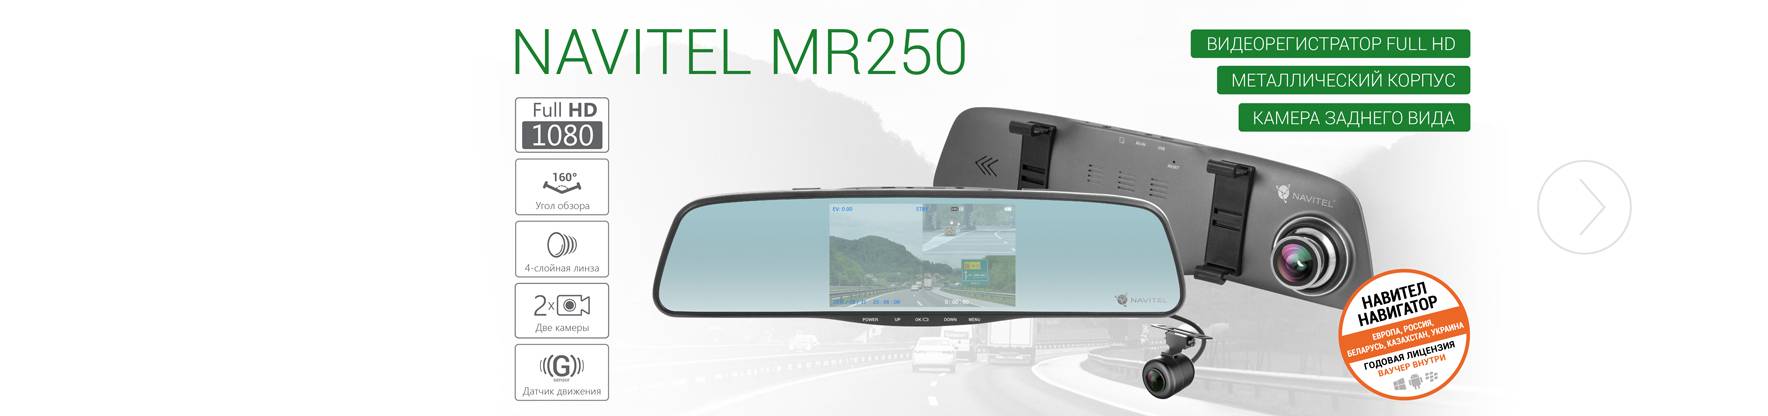 Navitel mr250 nv - зеркало-видеорегистратор c задней камерой и ночной съёмкой | обзор навител mr250 nv, тестирование и настройка зеркала-регистратора